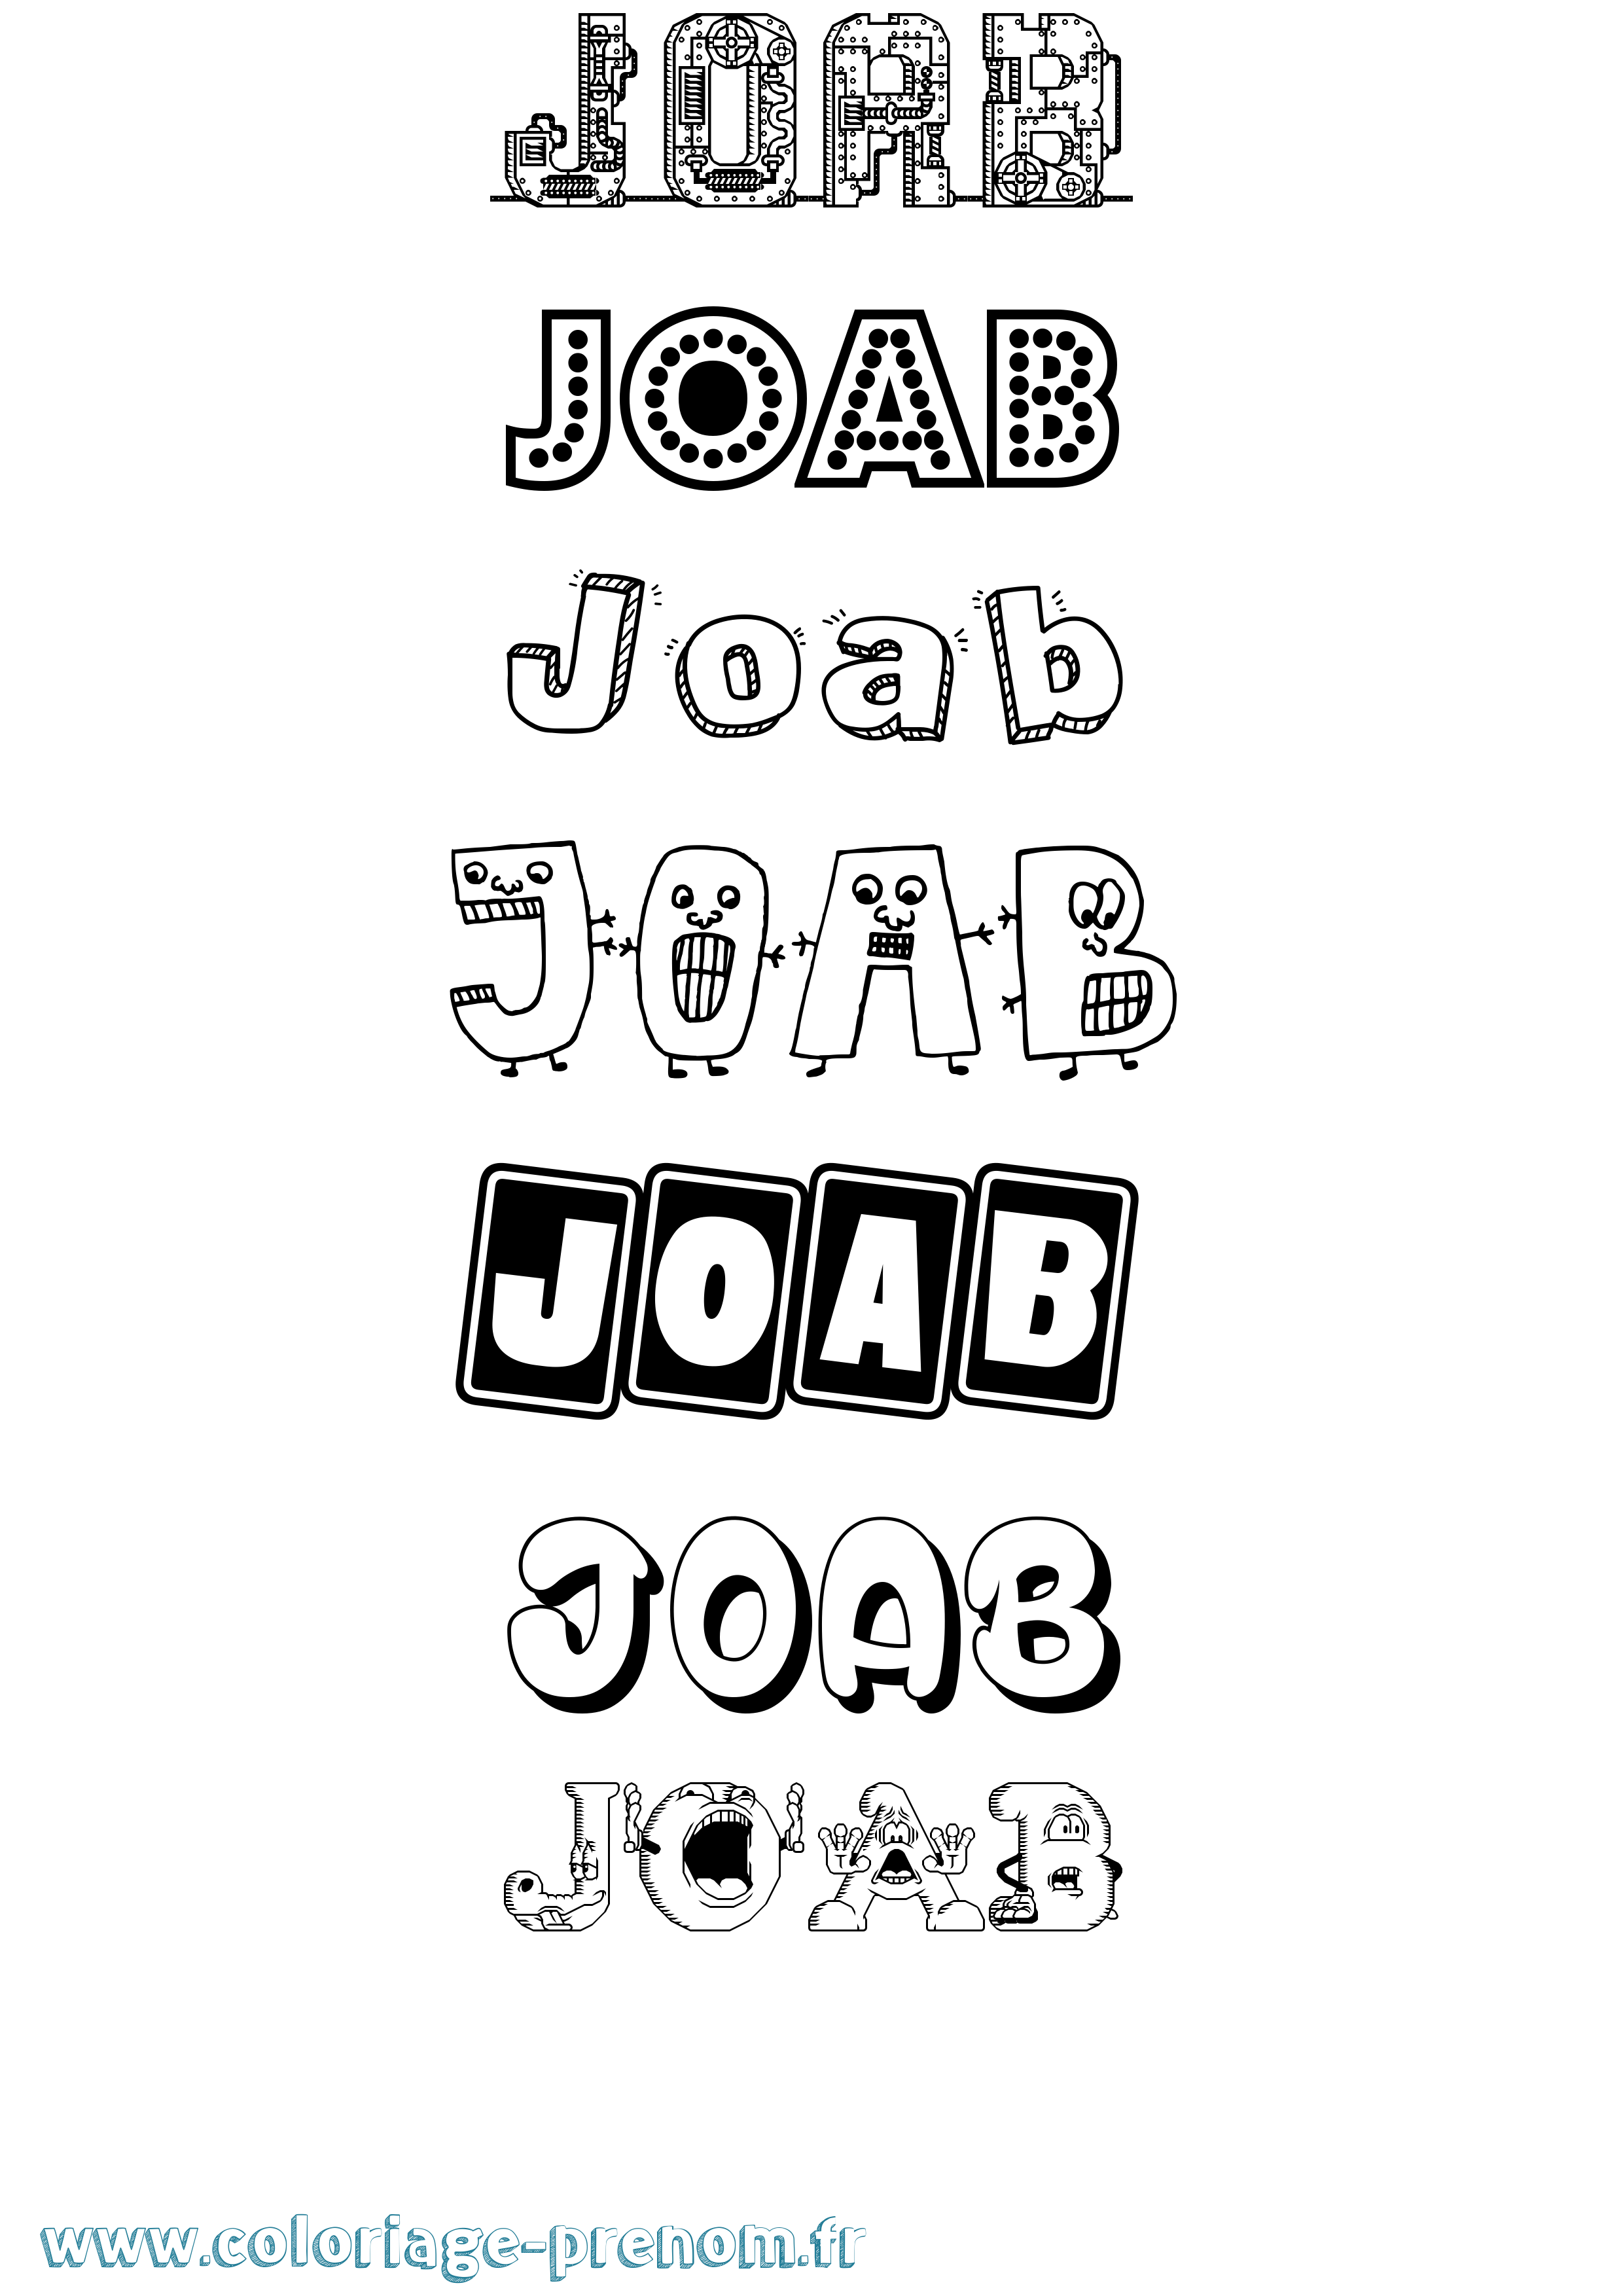 Coloriage prénom Joab Fun